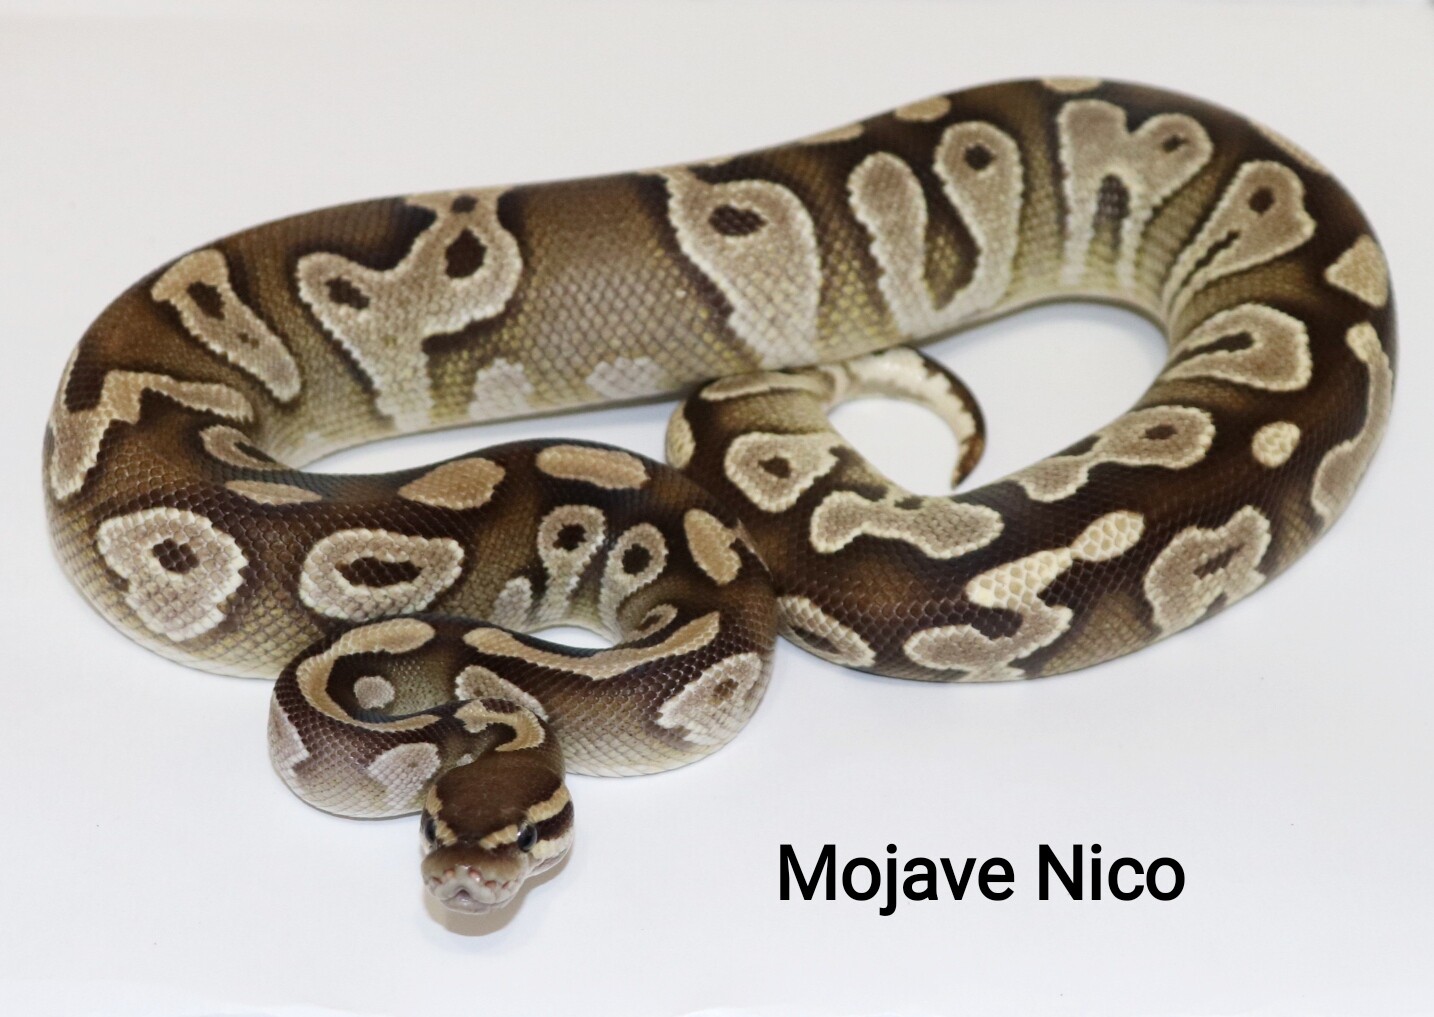 Mojave Nico by DNJ Pythons